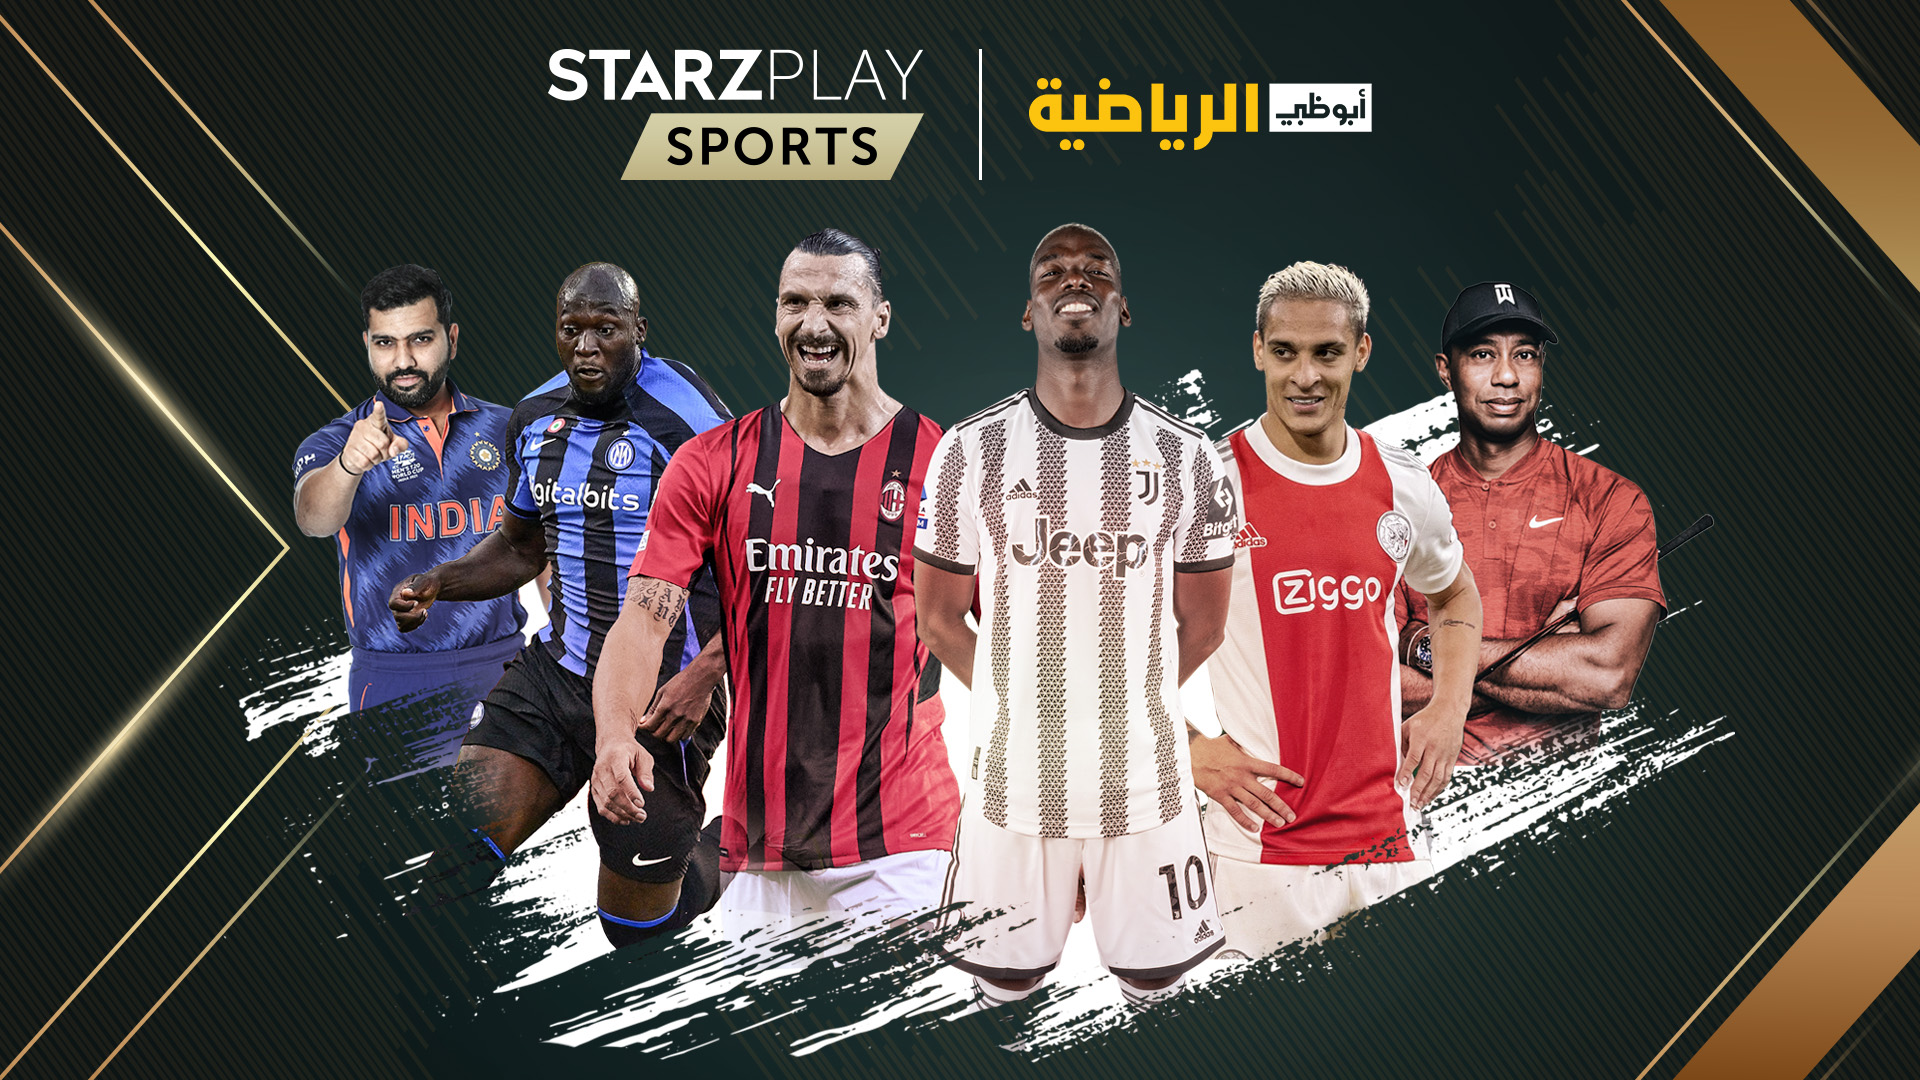 Starzplay تطلق منتج بث رياضي مخصص لسوق الشرق الأوسط وشمال إفريقيا